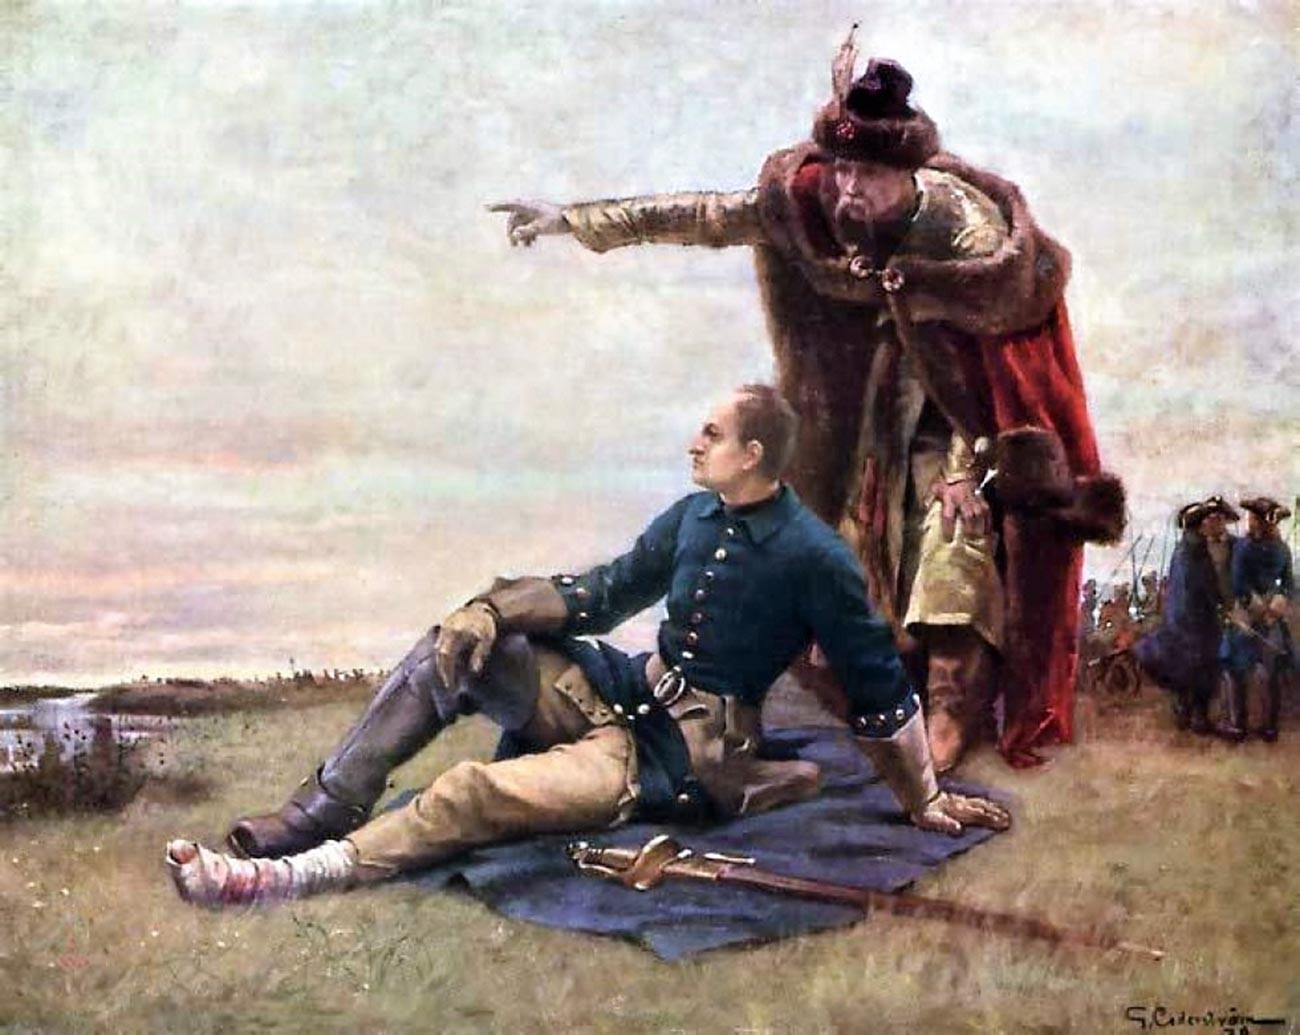 Raja Swedia Karl XII dan Ivan Mazepa setelah Pertempuran Poltava.

